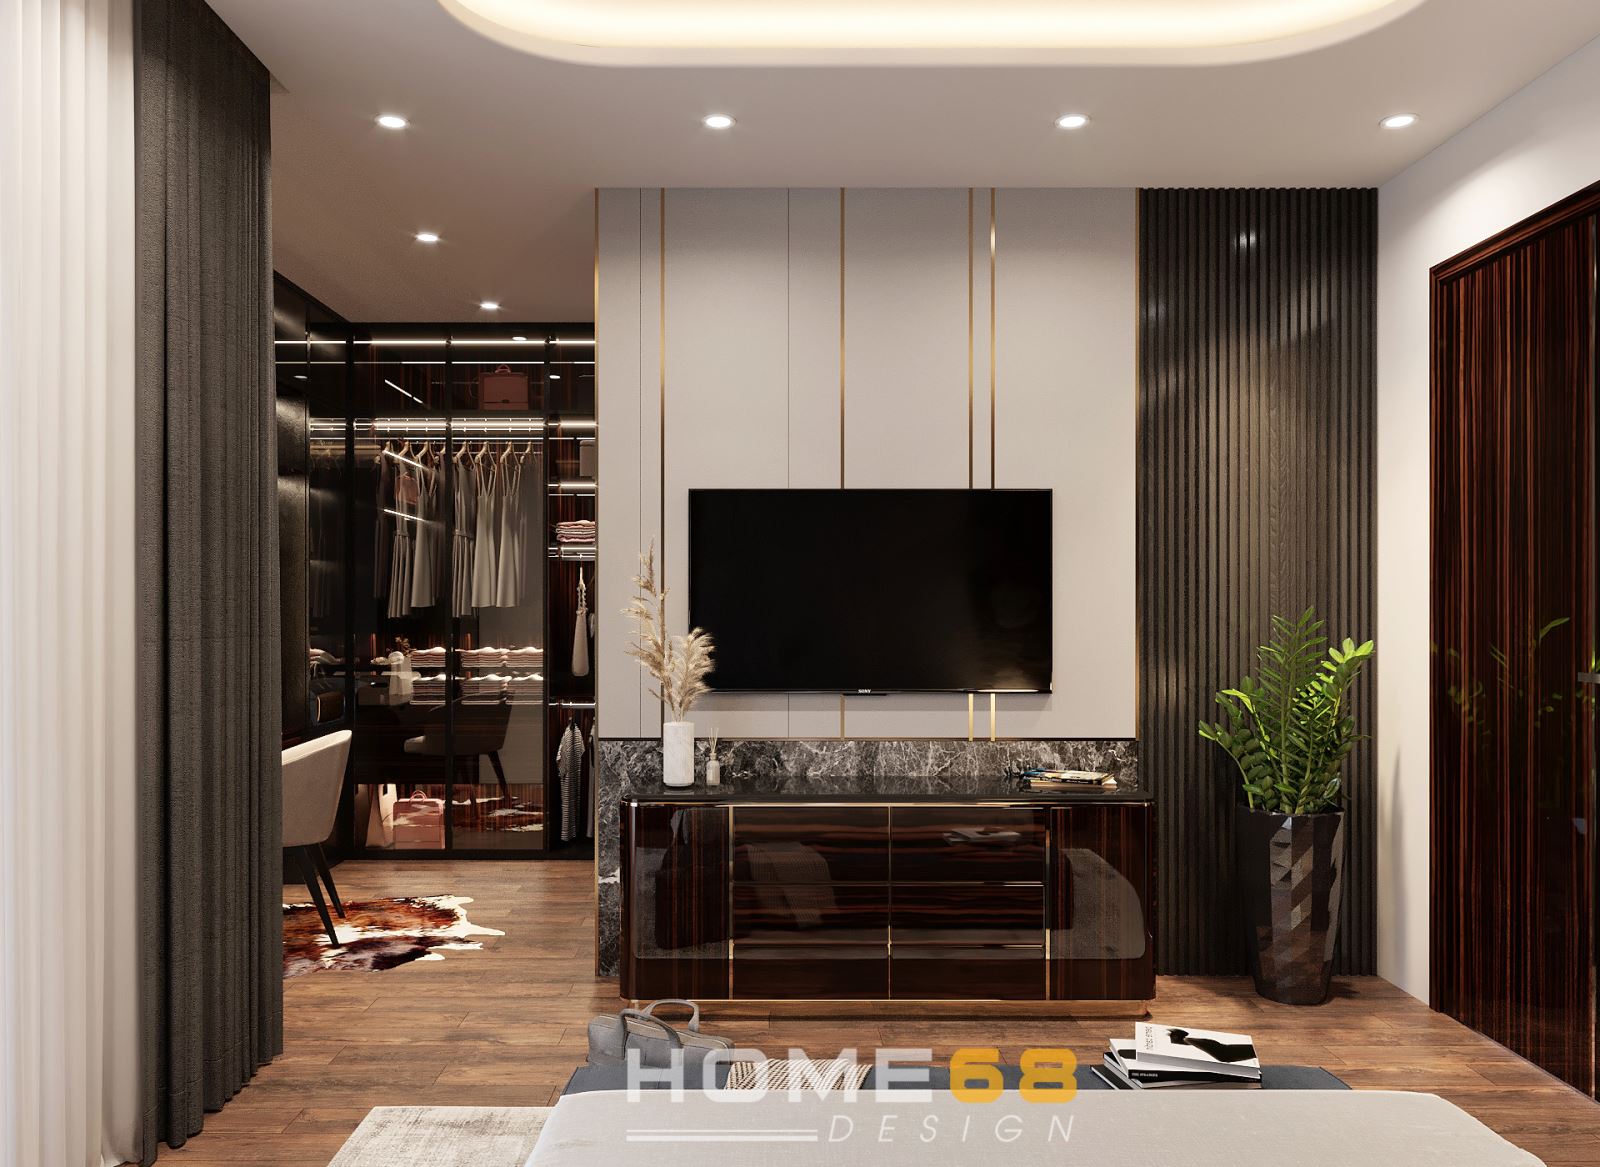 Thiết kế nội thất phòng thay đồ modern style đẳng cấp - HOME68